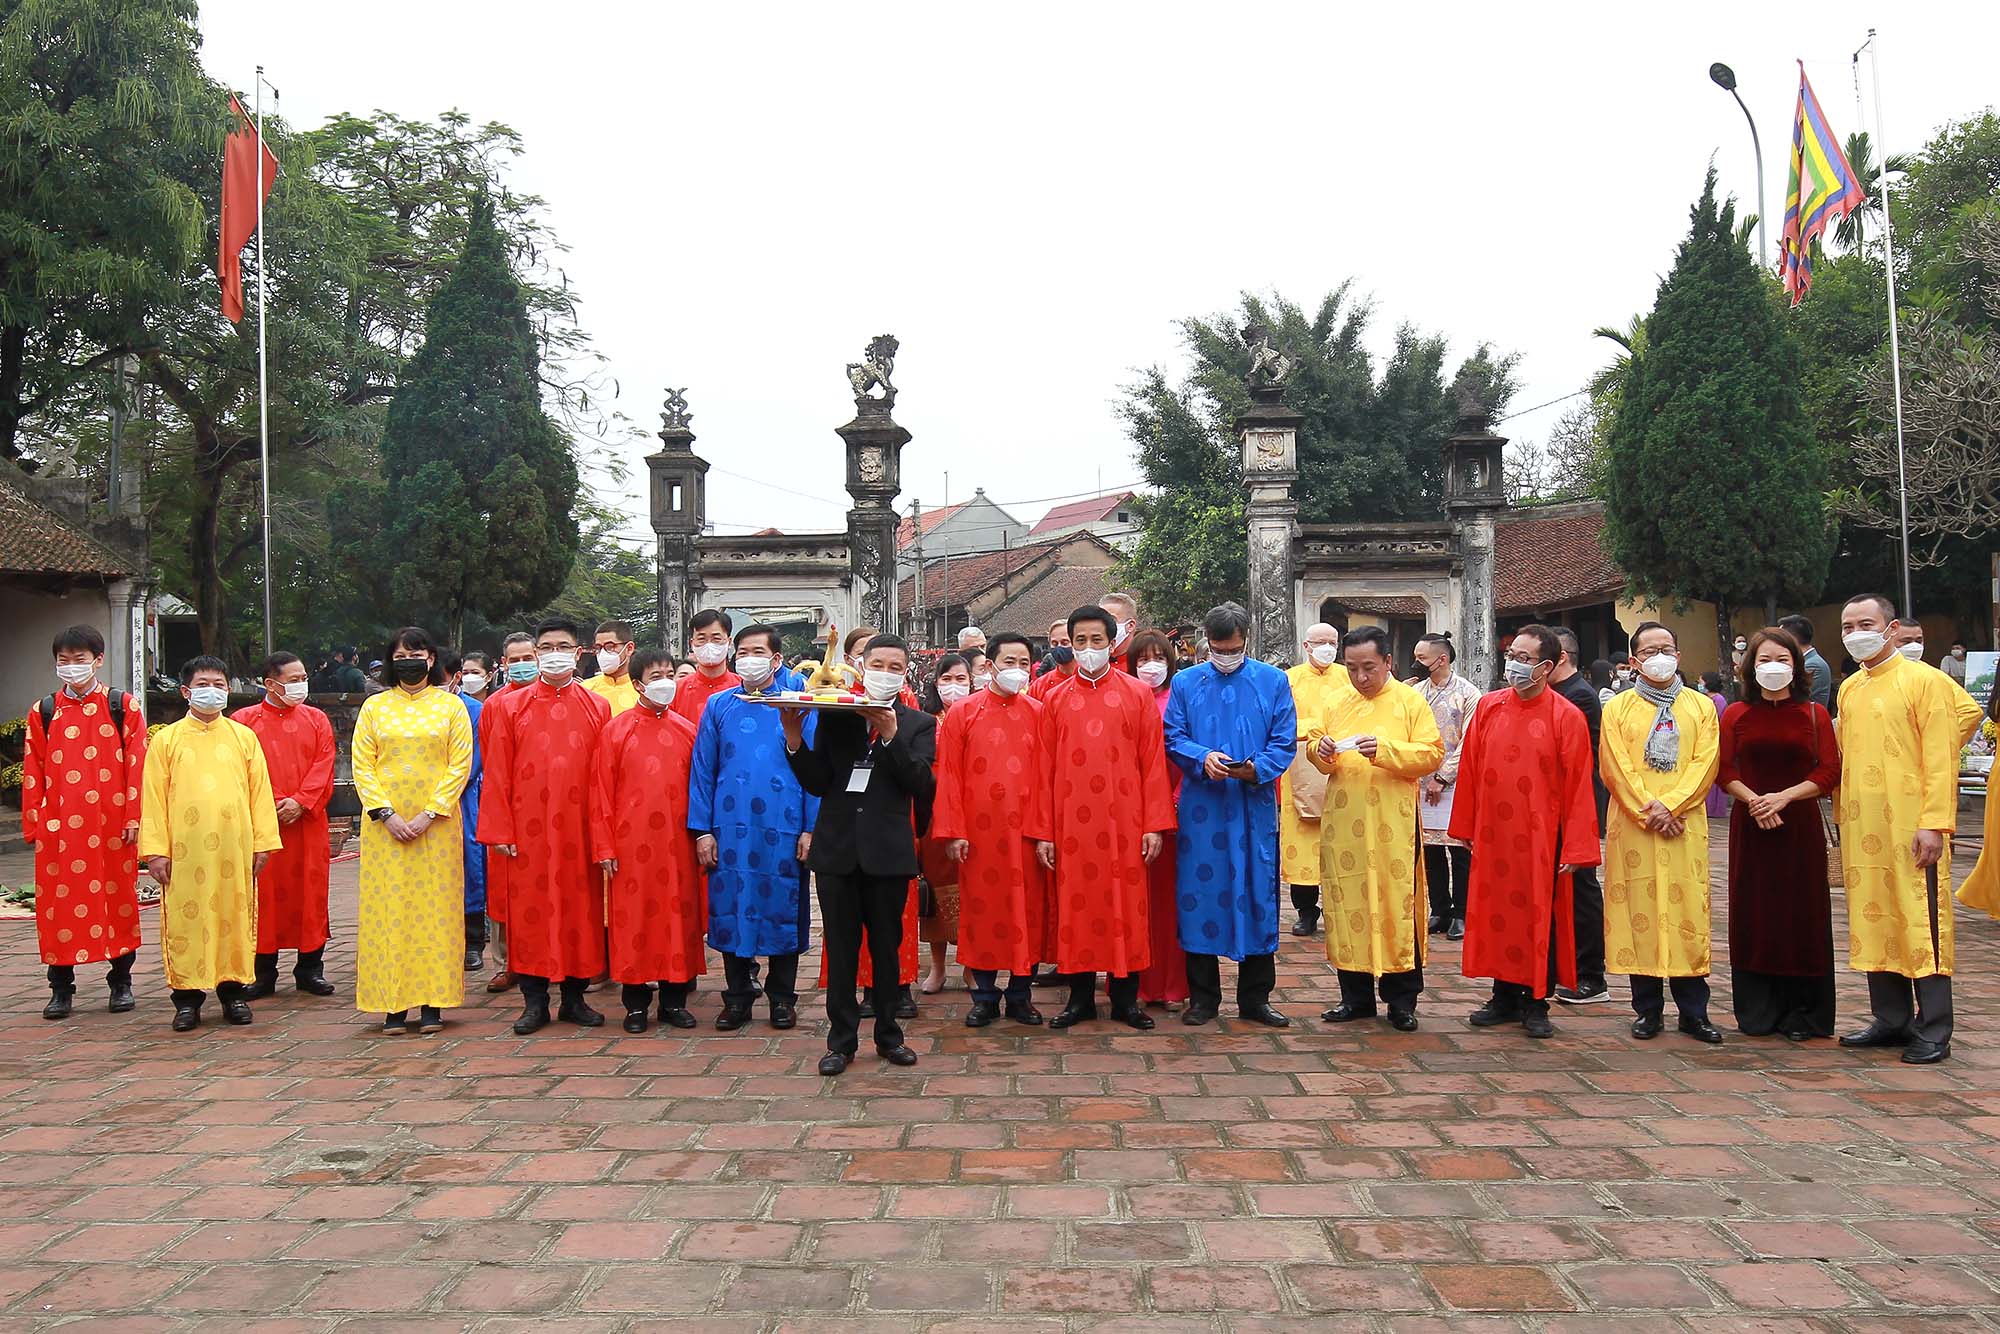 Gần 30 đại sứ và đại diện các cơ quan ngoại giao, các tổ chức quốc tế tại Hà Nội đã có chuyến tham quan Làng cổ Đường Lâm và trải nghiệm không khí Tết cổ truyền tại đây. (Nguồn ảnh: baodautu.vn)